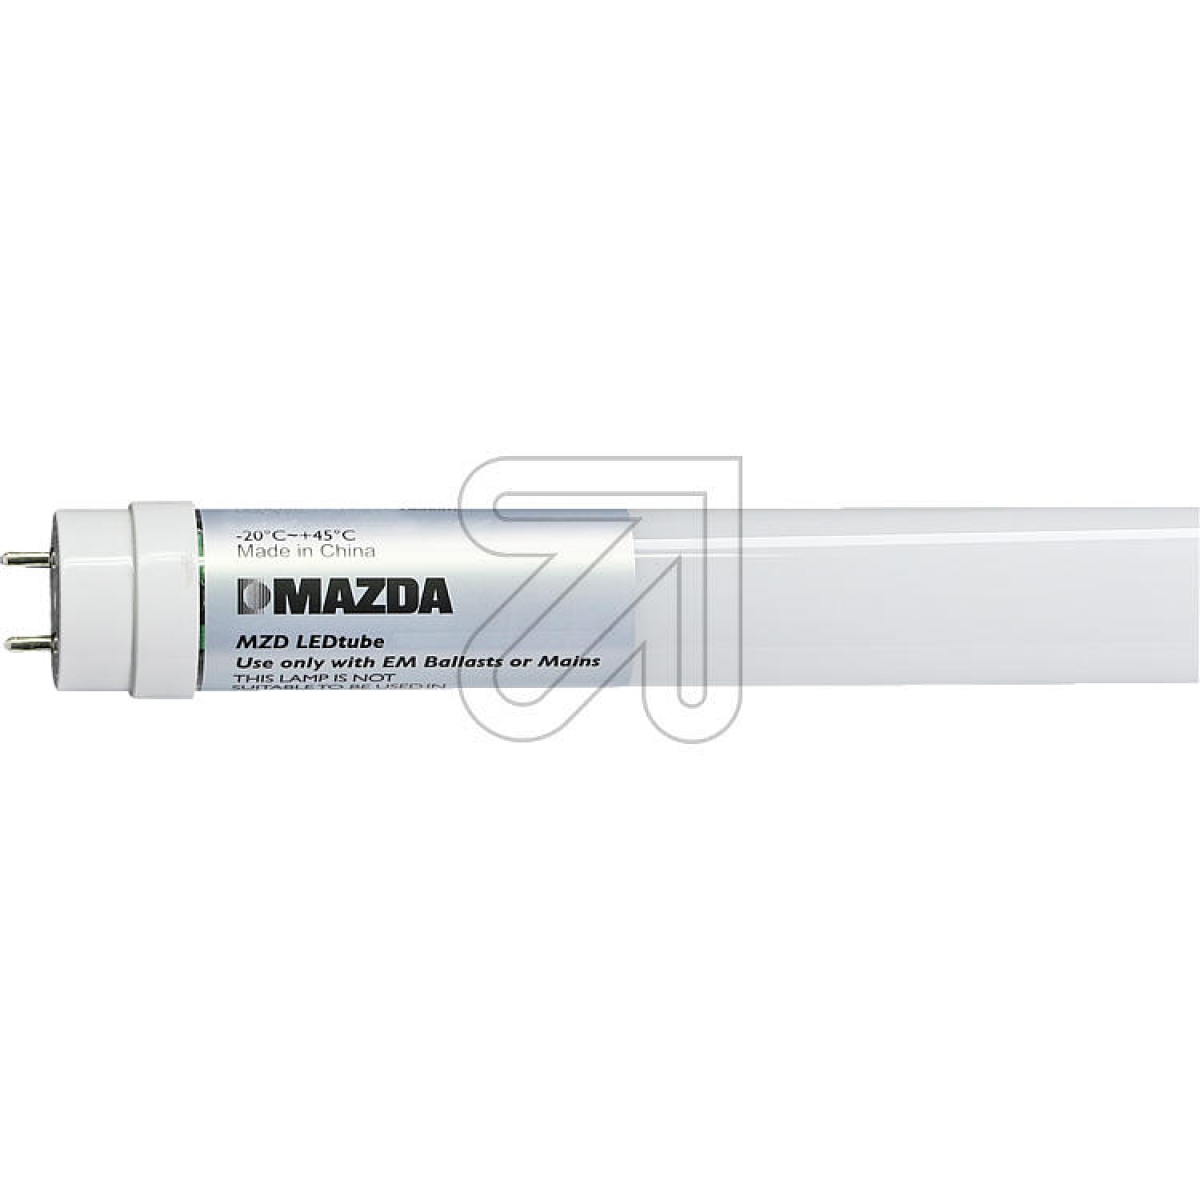 MAZDA LightingMAZDA LEDtube T8 600mm 8W 865 54330700-Price for 20 pcs.Article-No: 523005